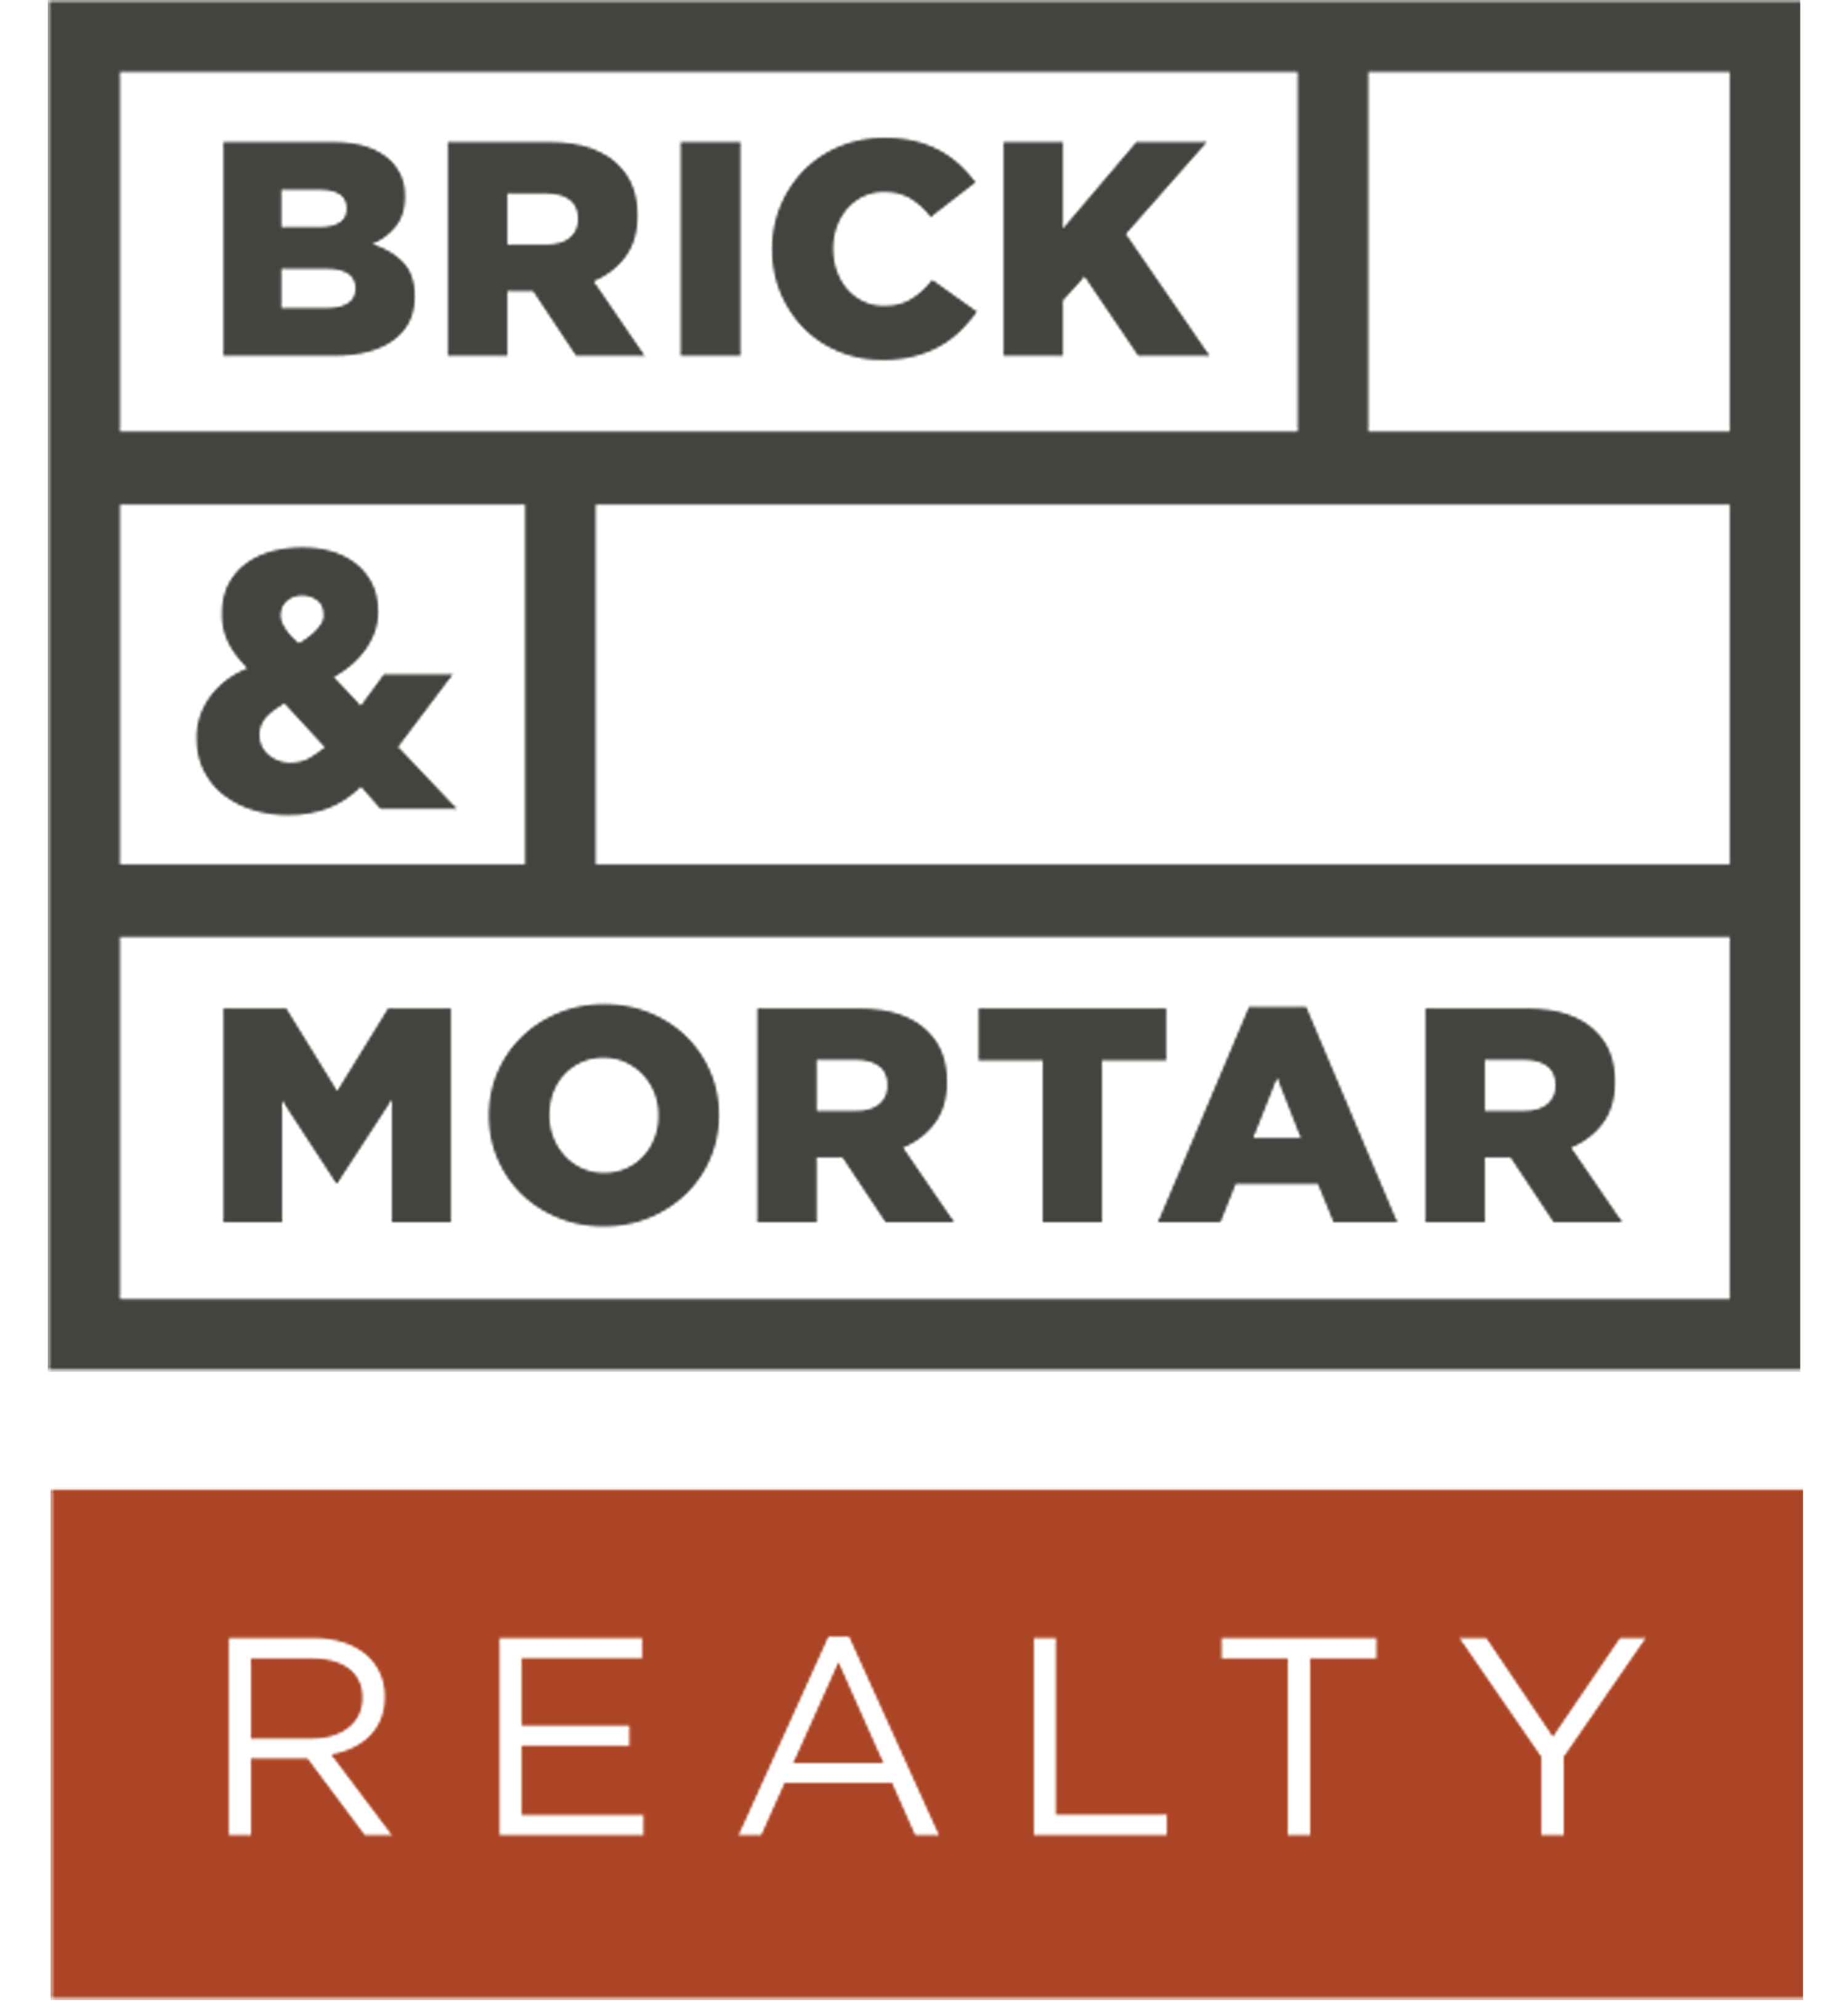 brick and mortar logo